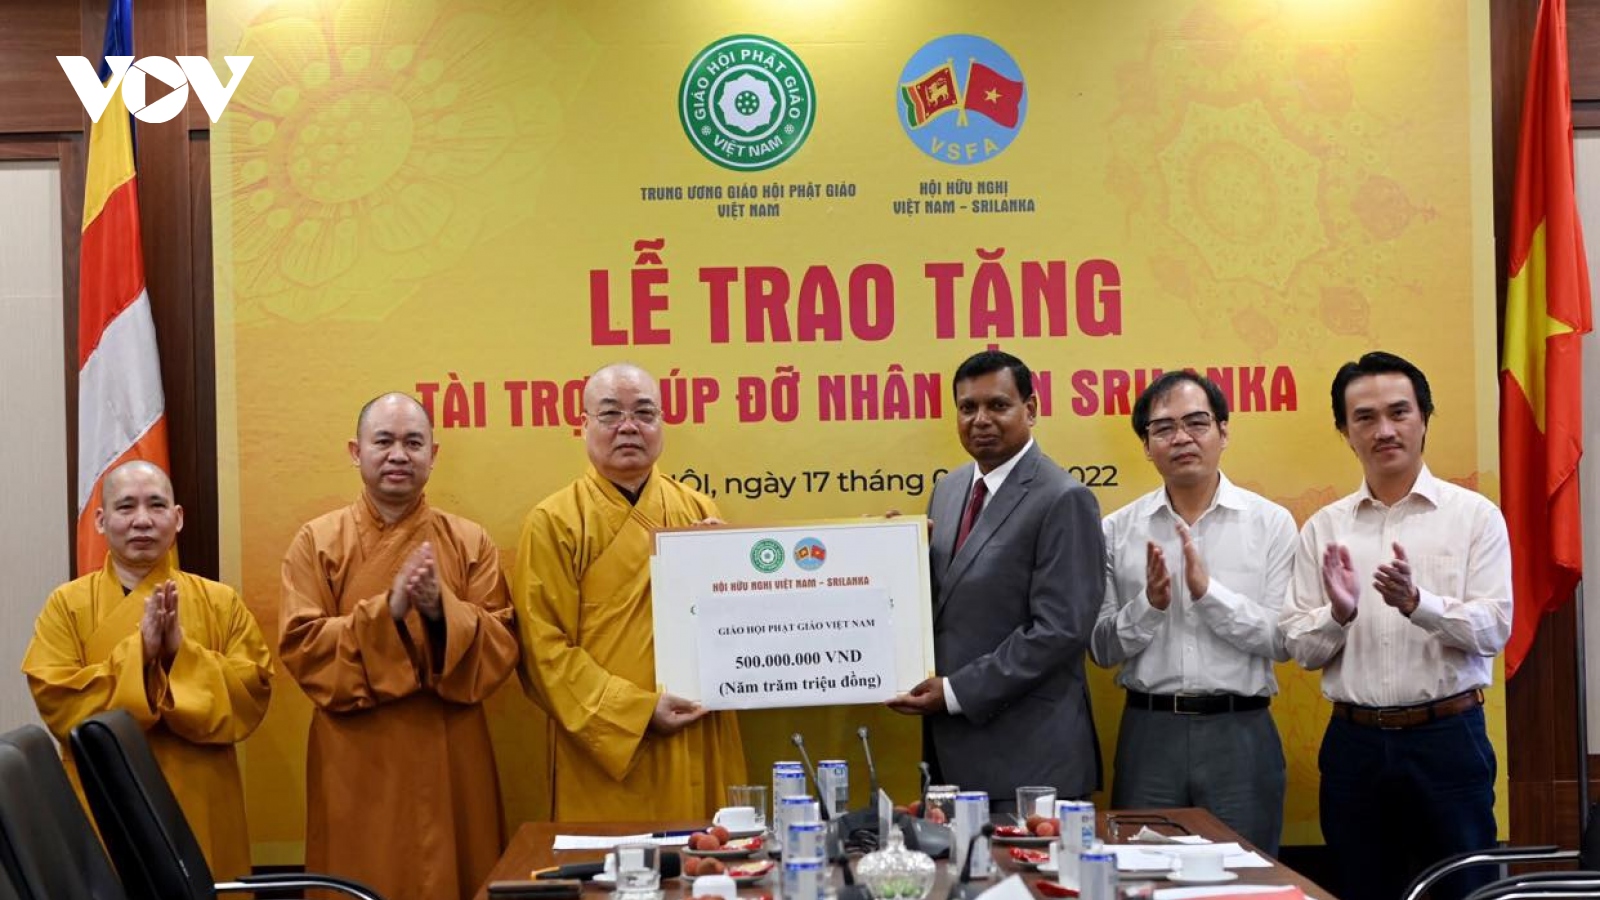 Giáo hội Phật giáo Việt Nam trao tài trợ giúp đỡ nhân dân Sri Lanka